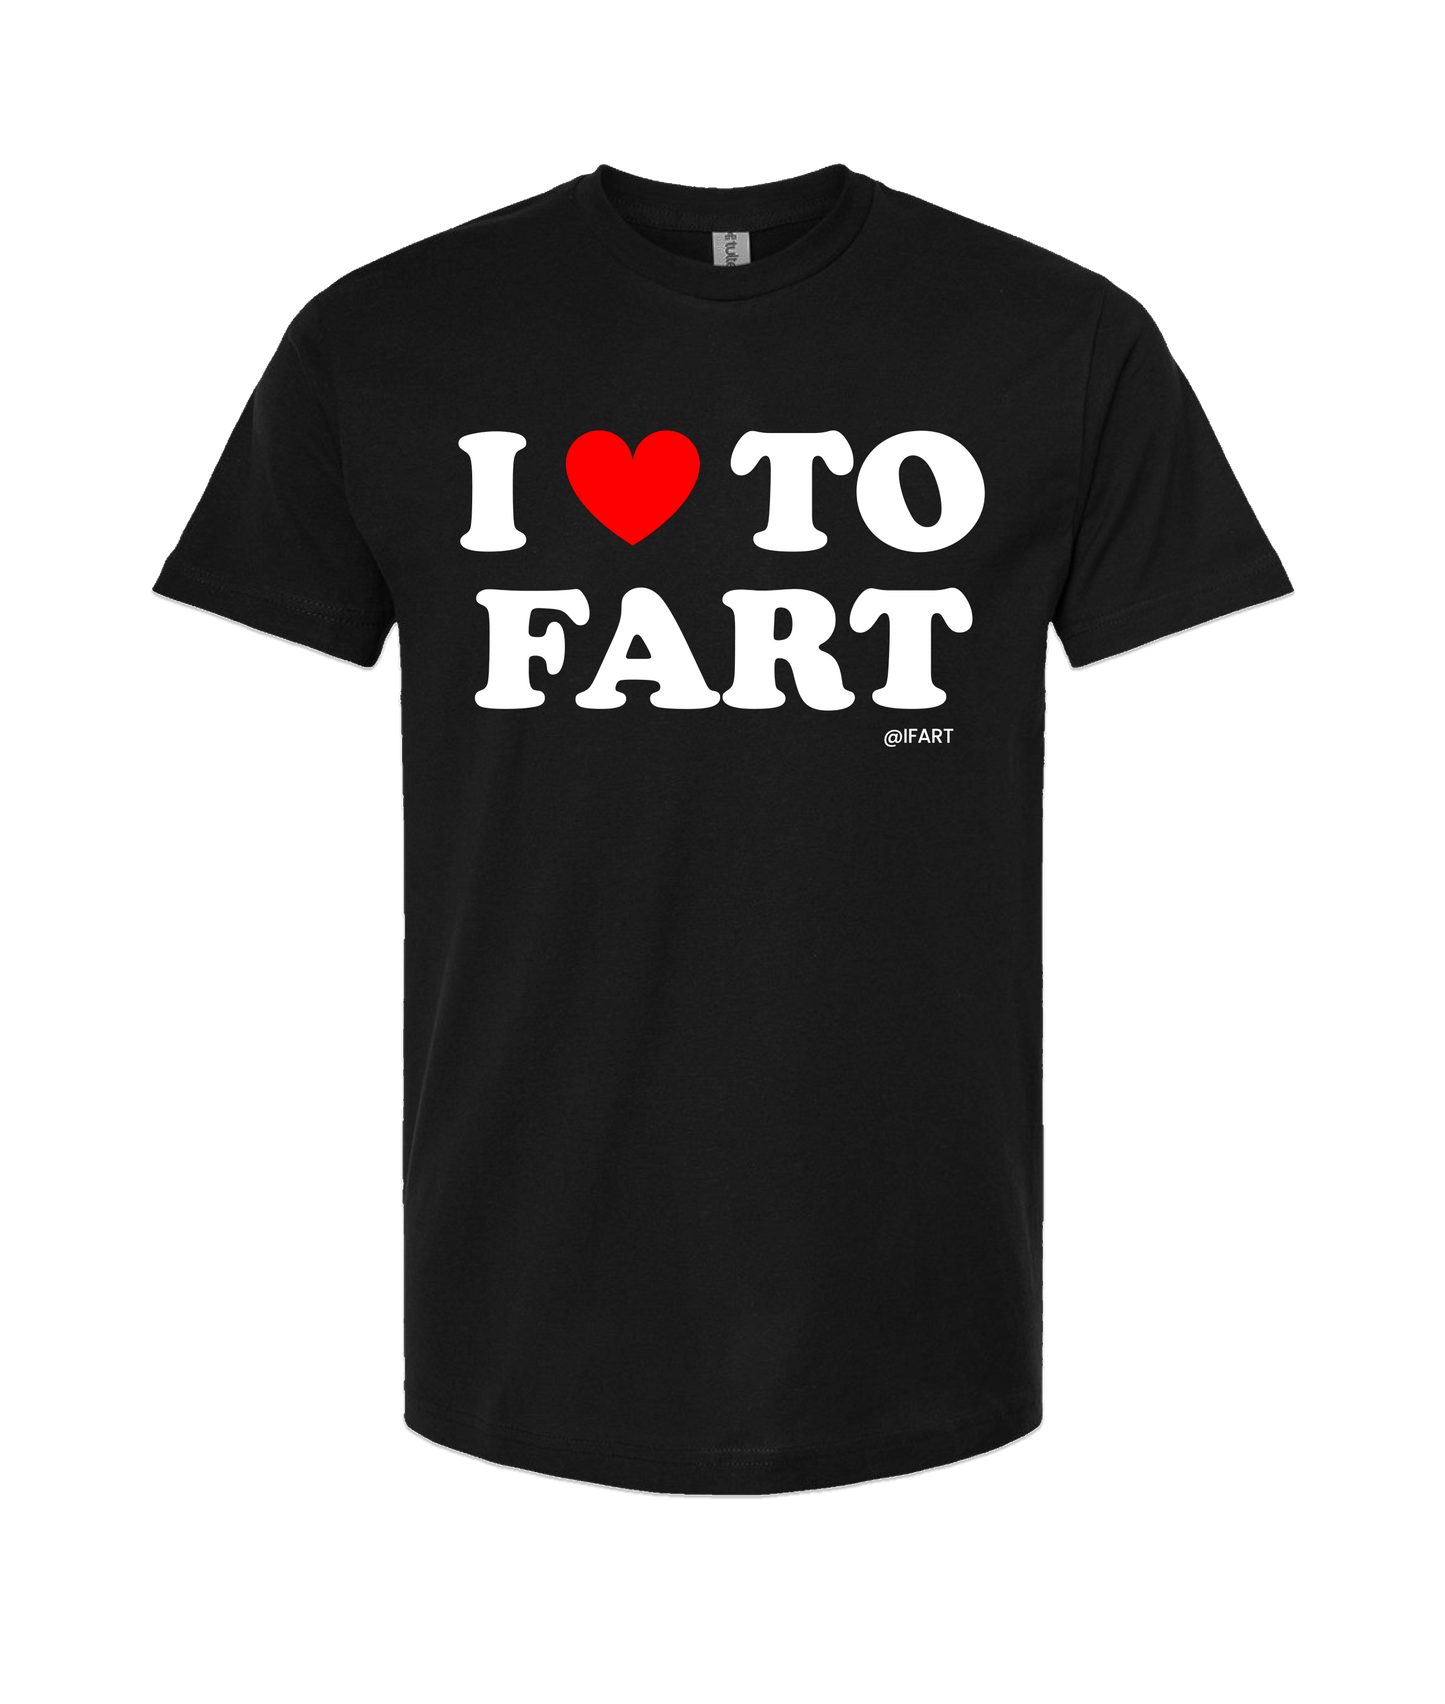 iFart - I <3 TO FART - Black T-Shirt